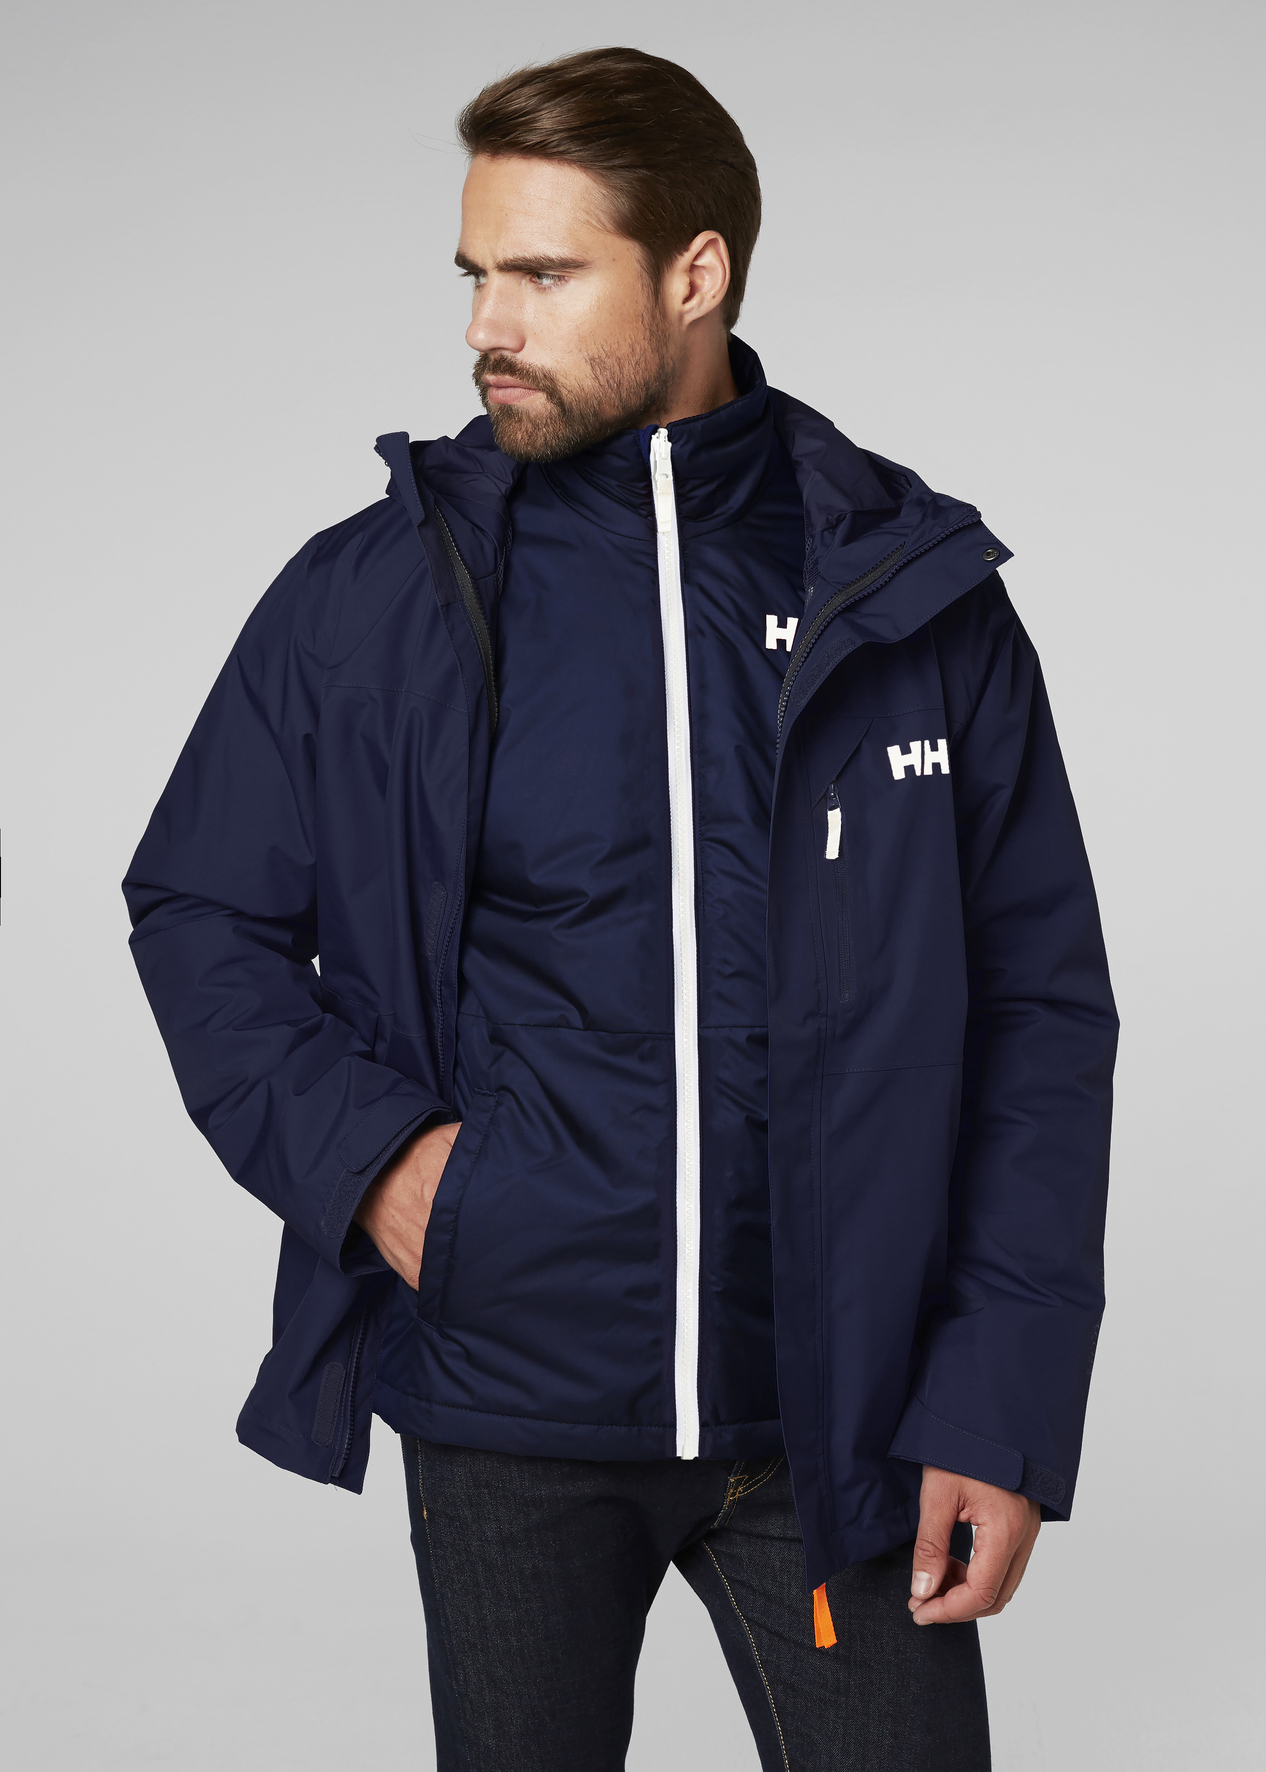 Куртка мужская Adidas Bts Jacket, цвет: синий. CY9125. Размер XL (56/58)